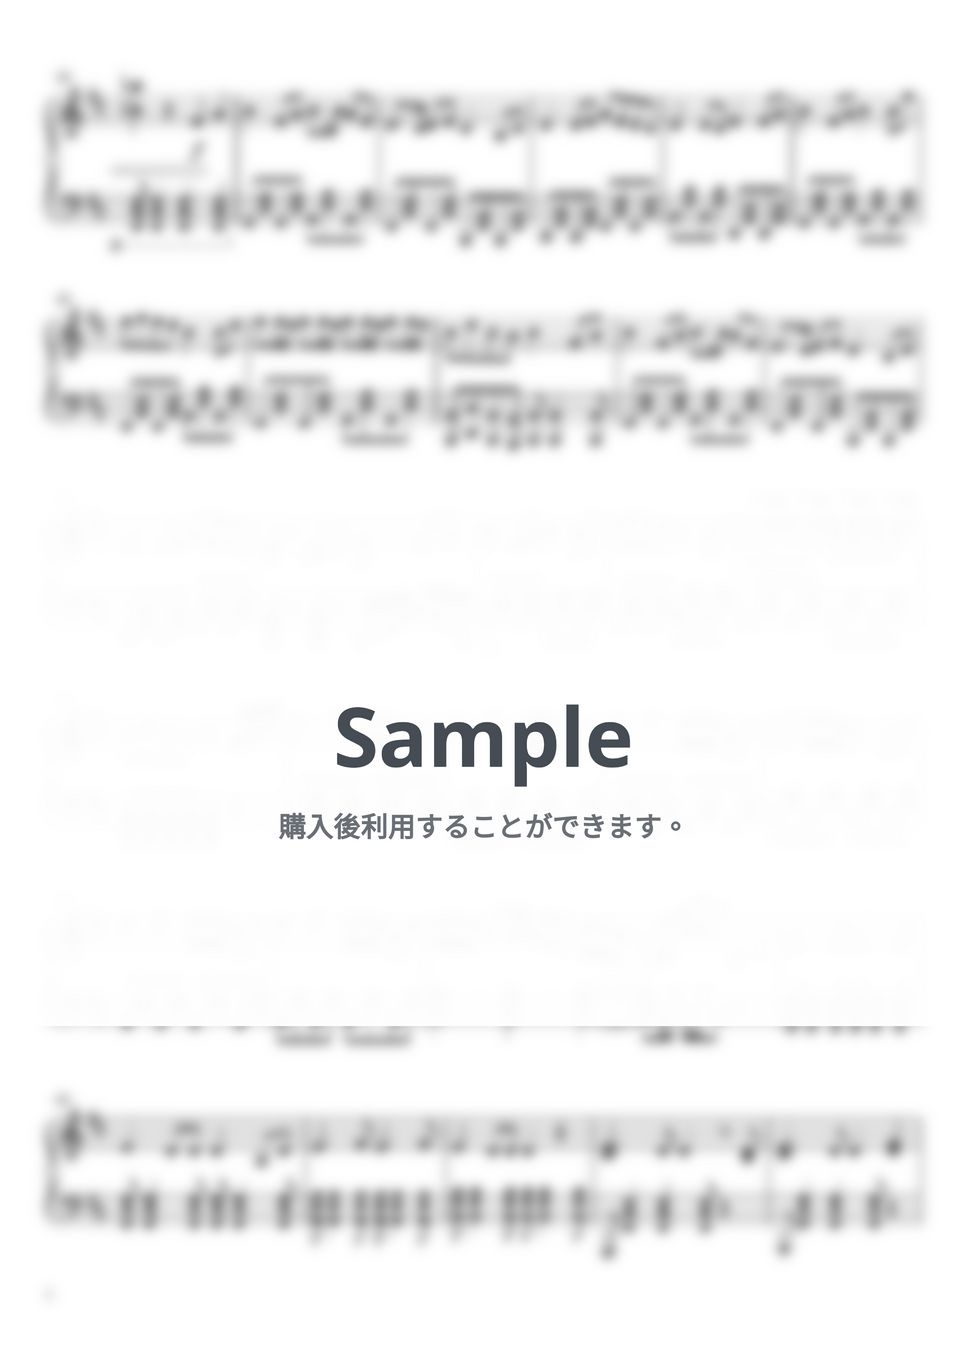 kemu - 六兆年と一夜物語 (ピアノソロ 上級) by Tetsu Studio